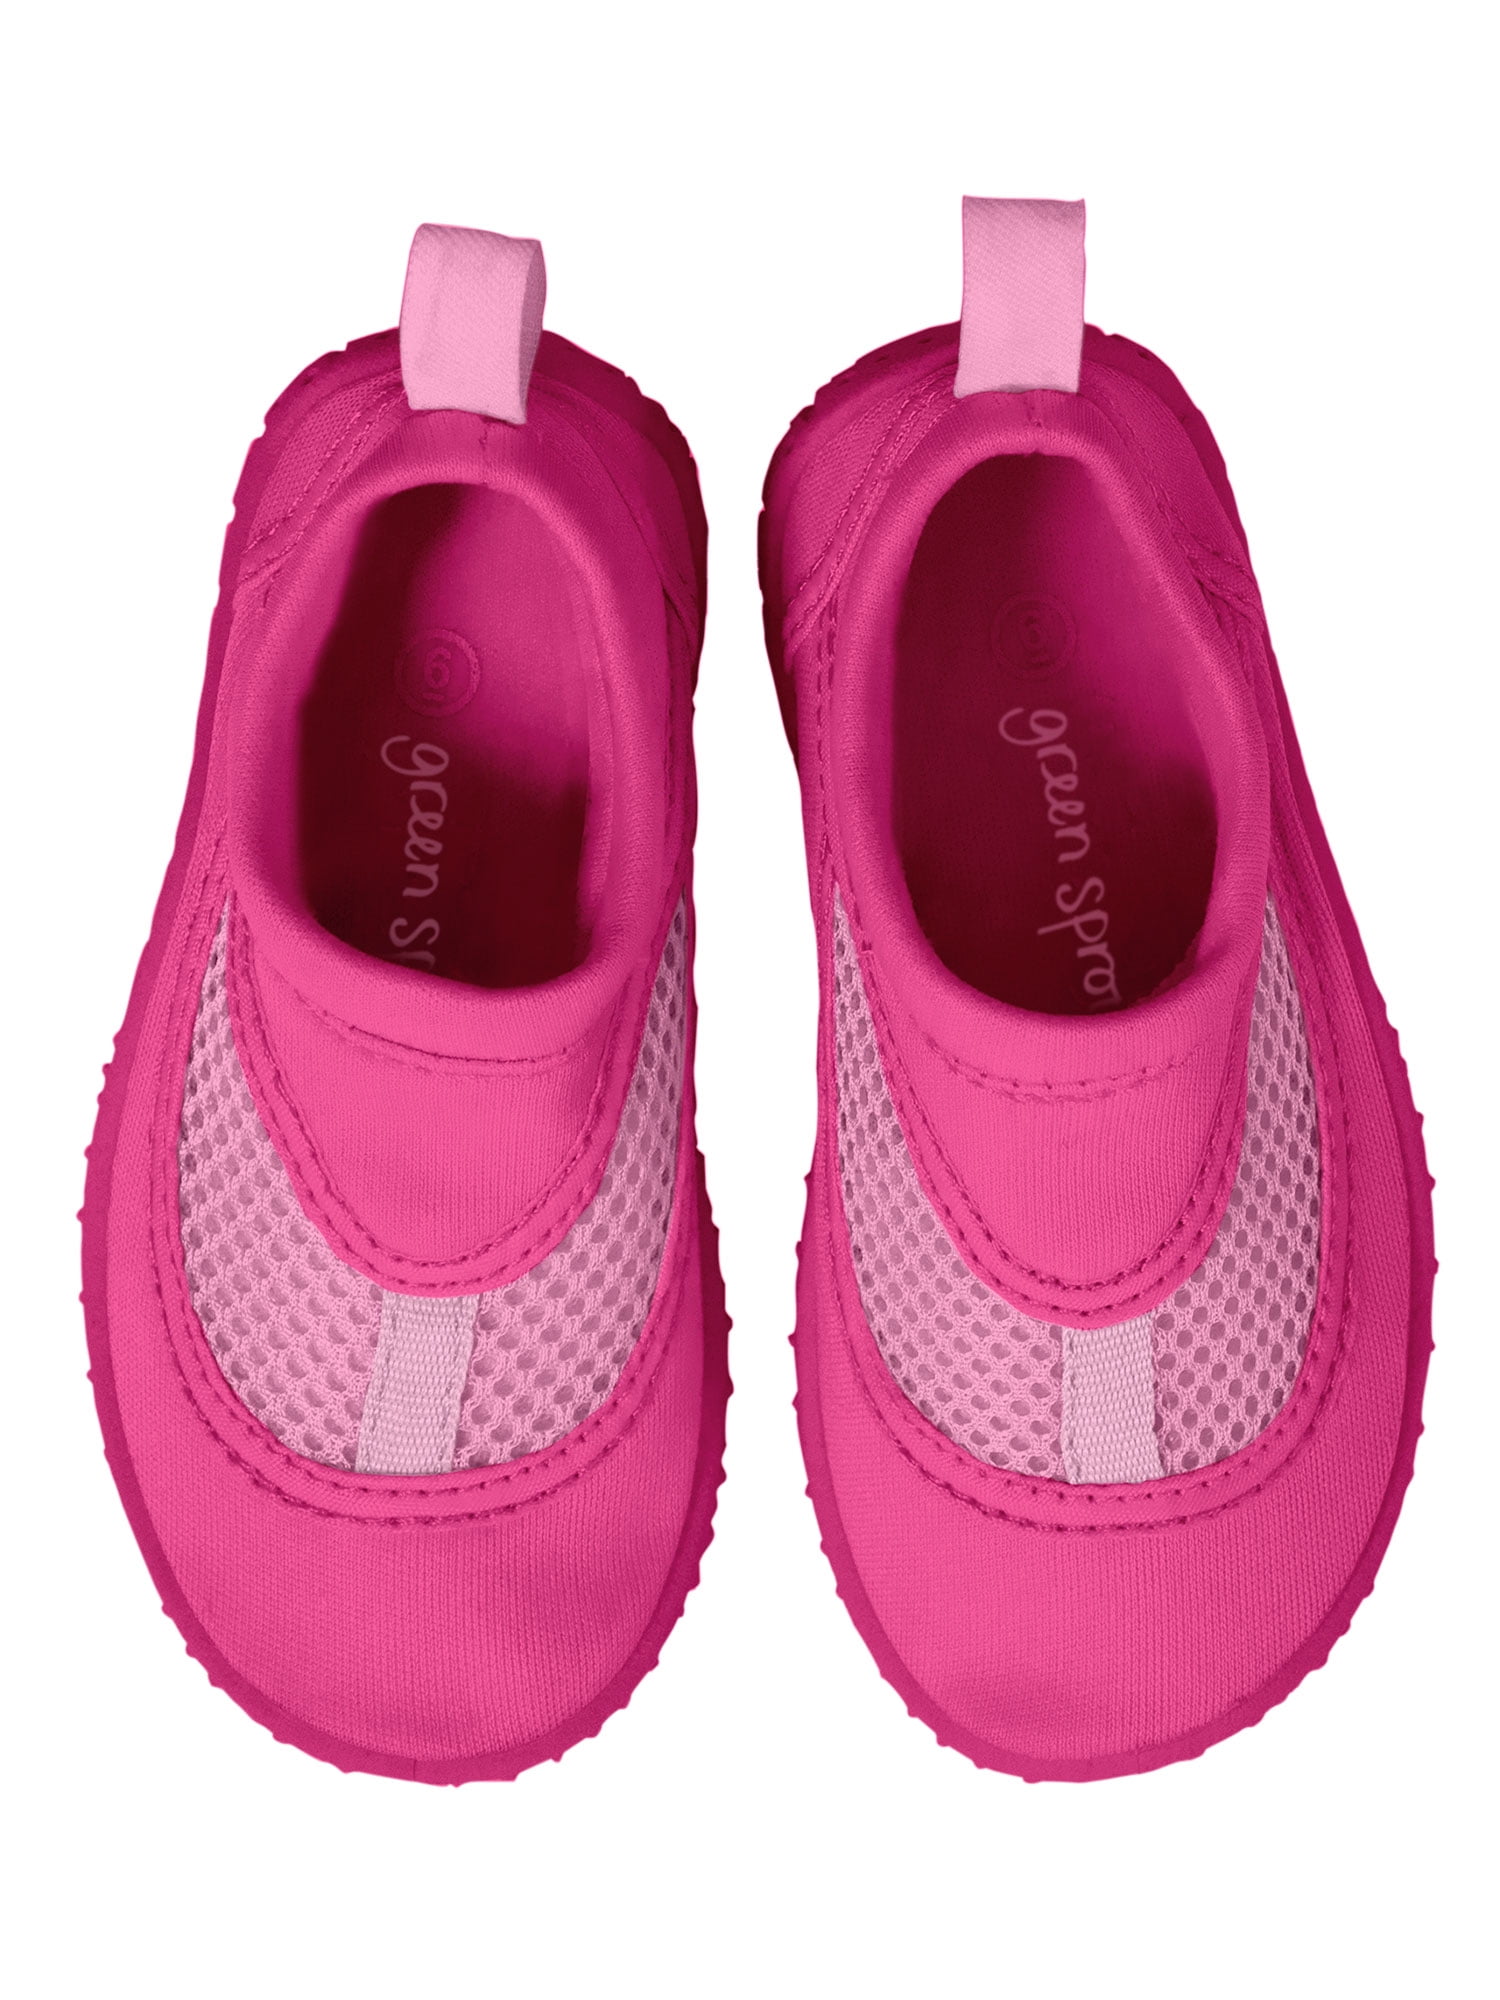 walmart girls water shoes